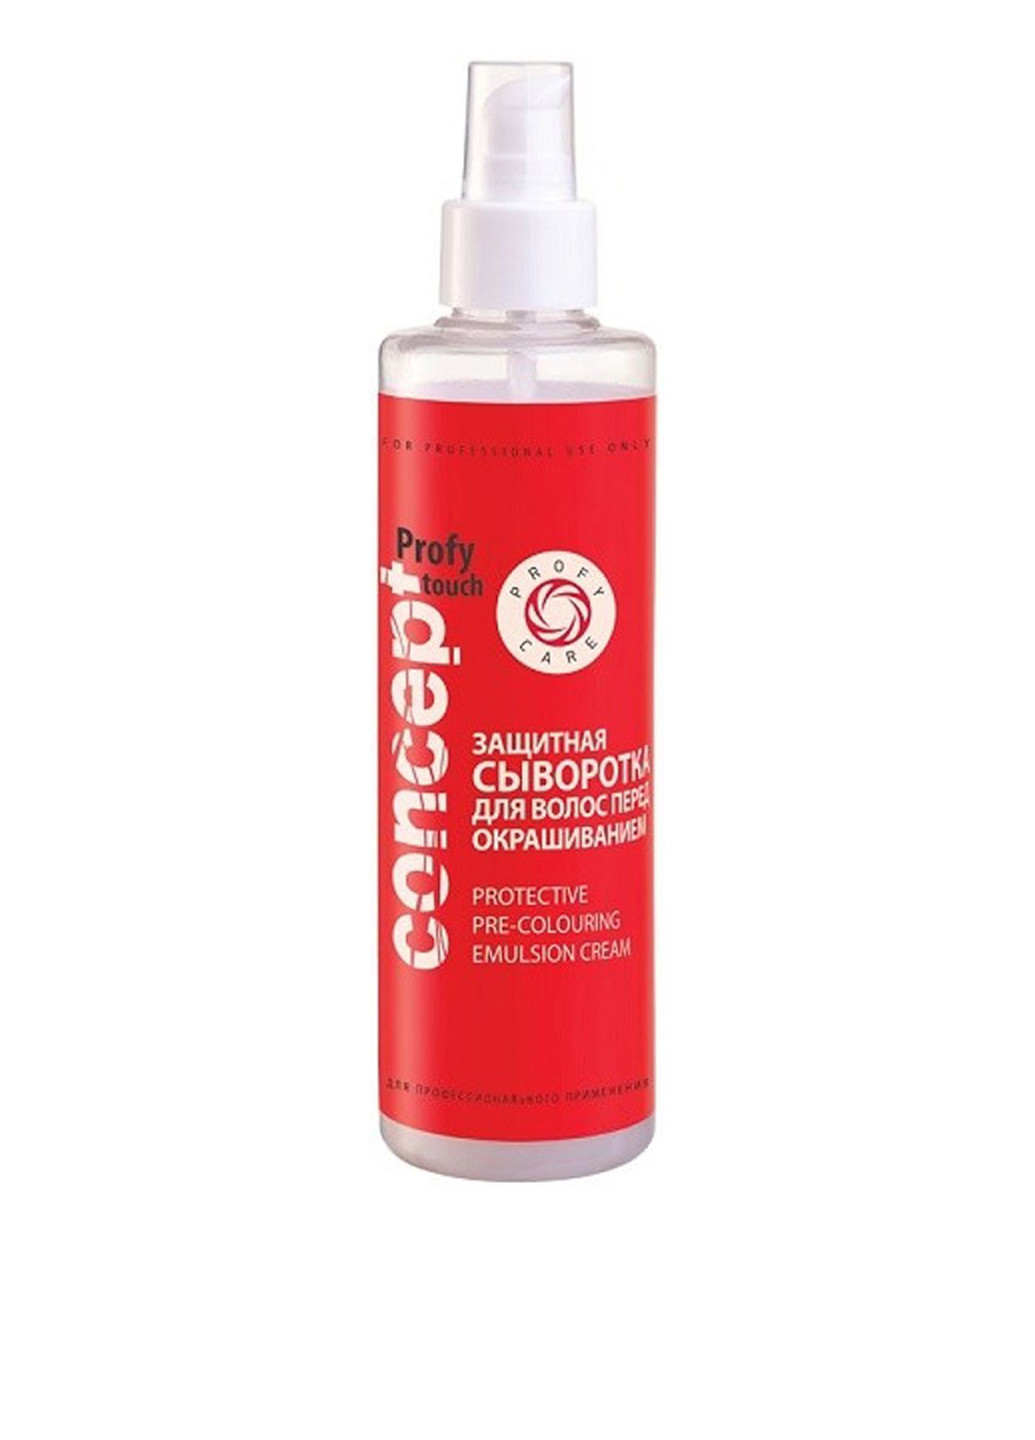 Сыворотка для волос перед окрашиванием защитная Protective Pre-Colouring Emulsion Cream, 200 мл Concept (75296548)